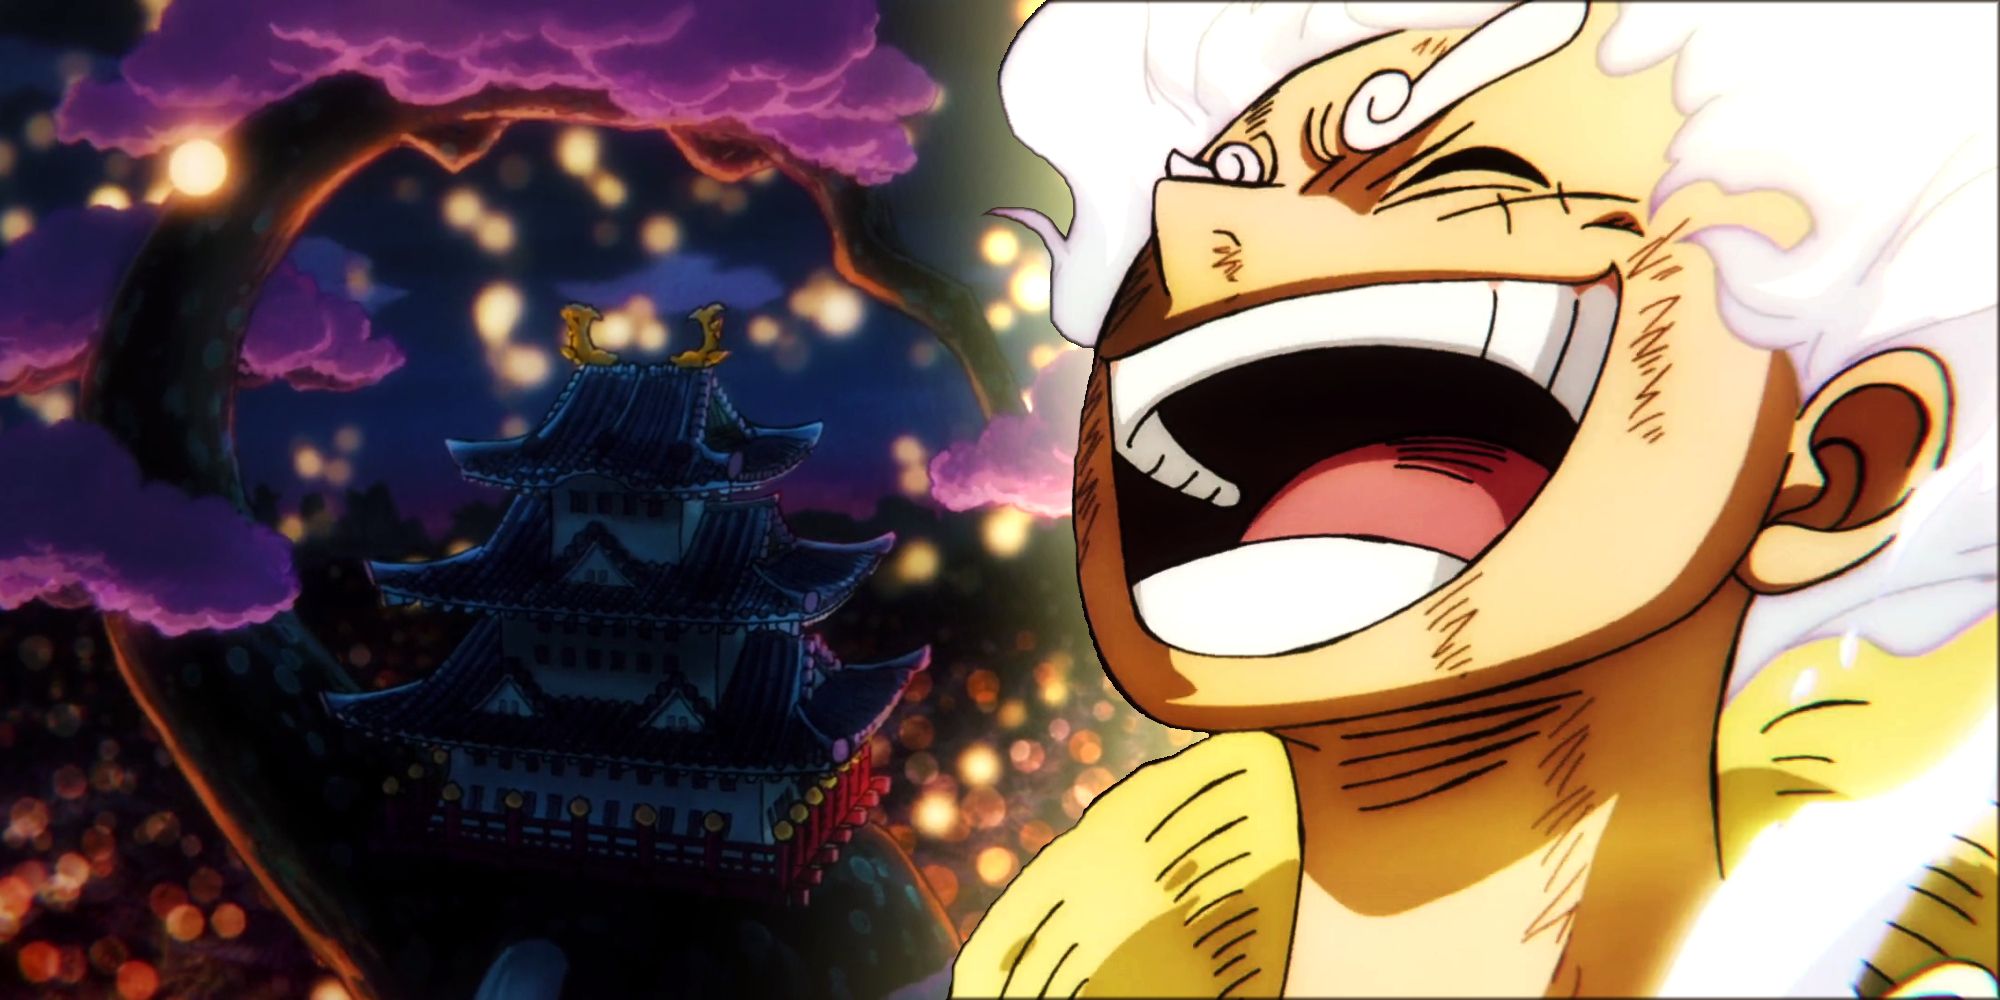 Revisión retro: el arco de Wano de One Piece llevó la serie a alturas sin precedentes